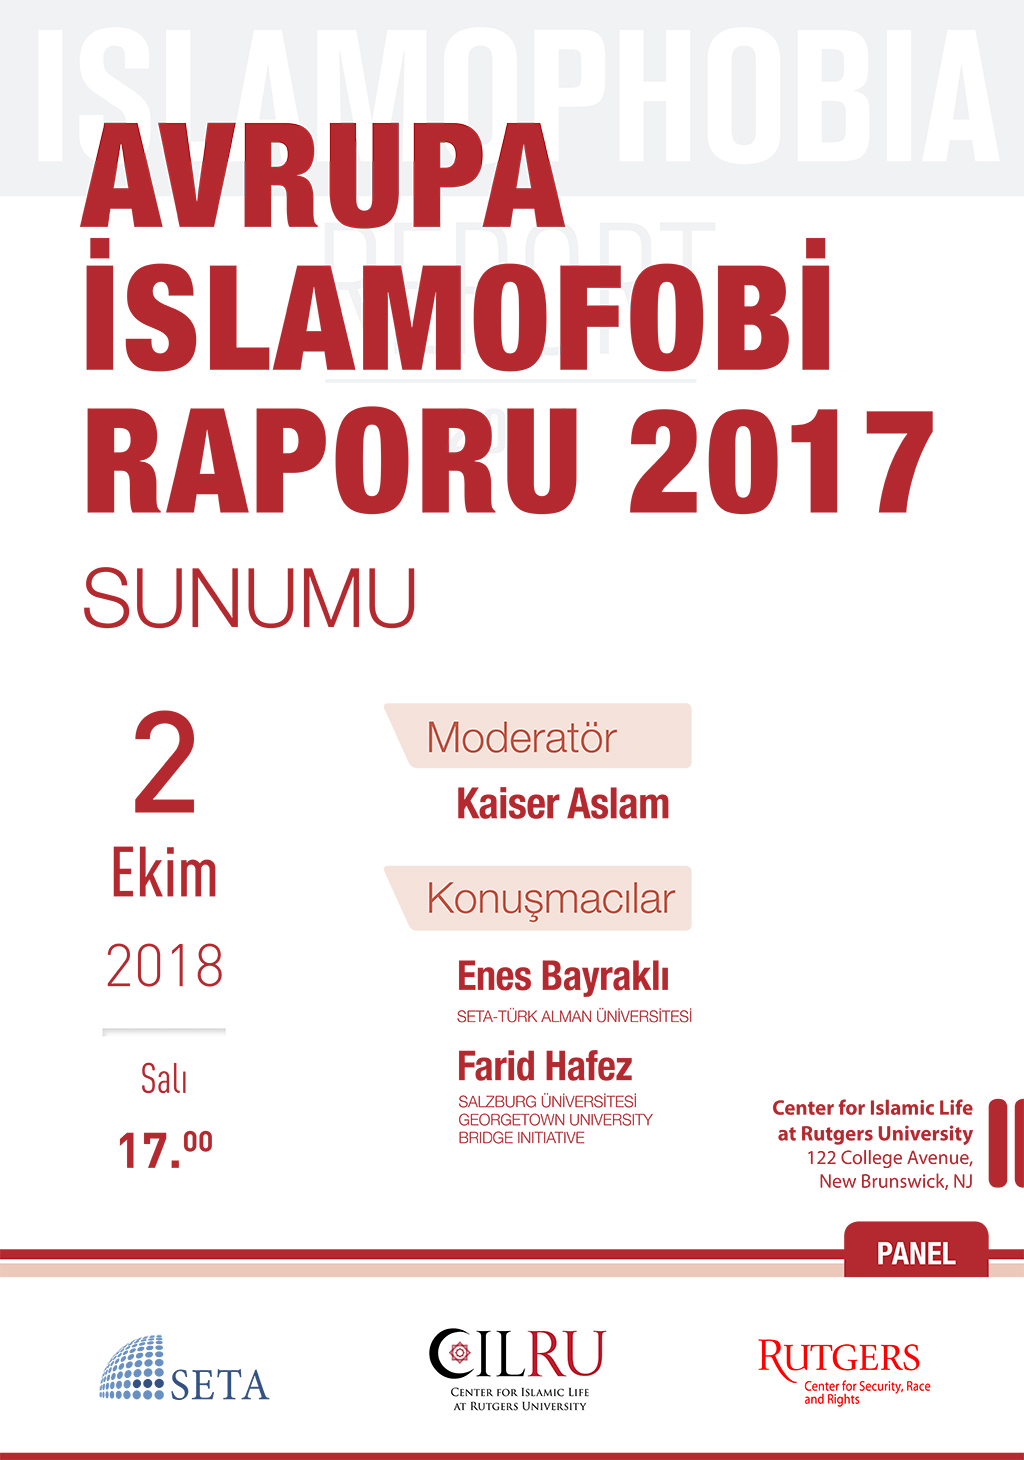 Avrupa İslamofobi Raporu 2017 Sunumu